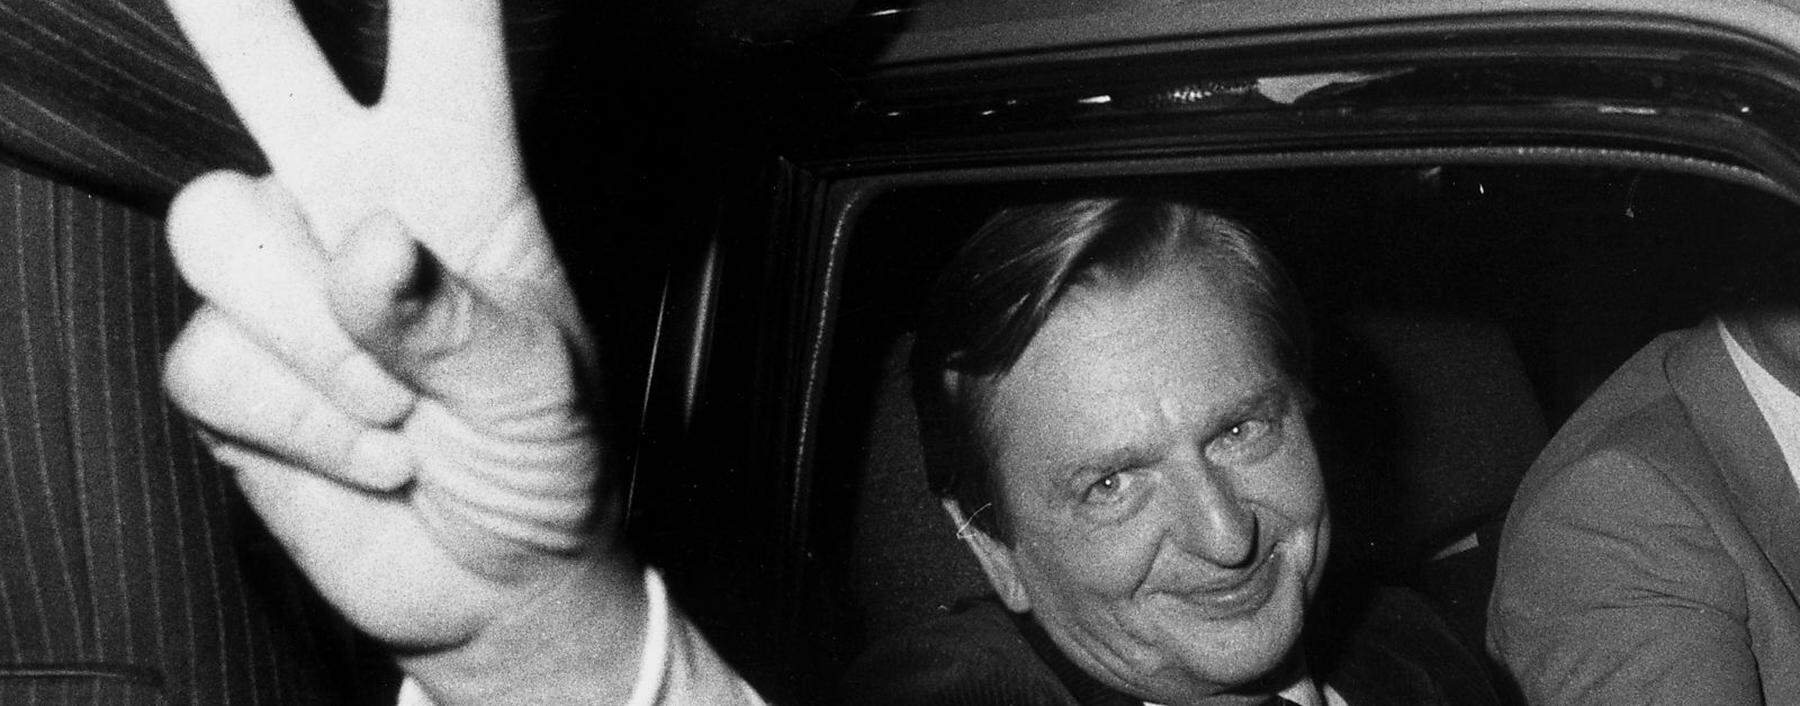 Olof Palme auf einem Archivbild im Jahr 1982, rund vier Jahre vor seiner Ermordung in Stockholm.